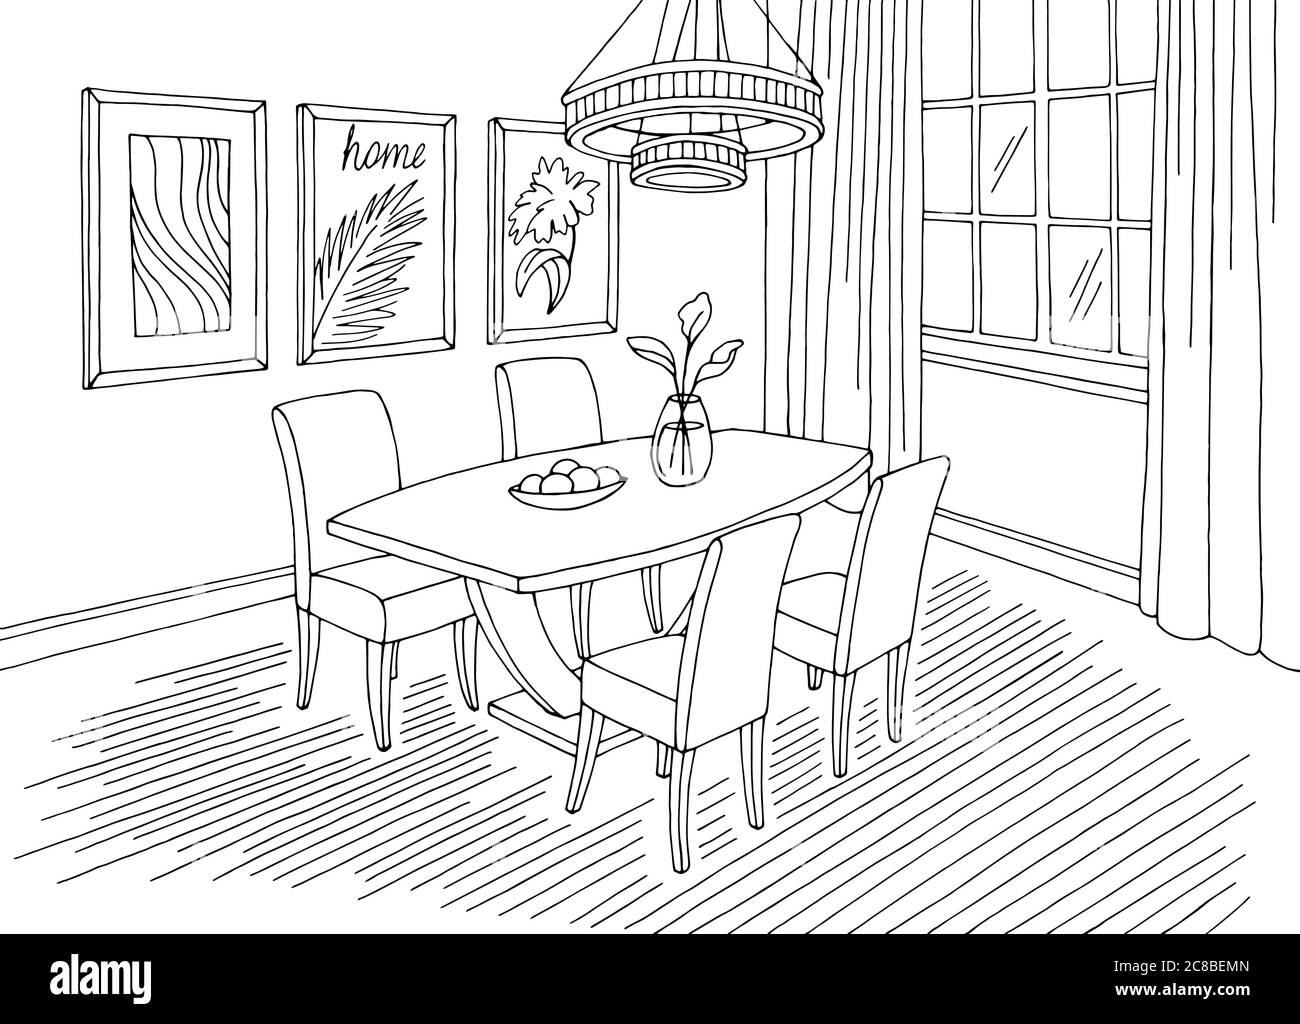 Esszimmer Heim Inneneinrichtung Grafik schwarz weiß Skizze Illustration Vektor Stock Vektor